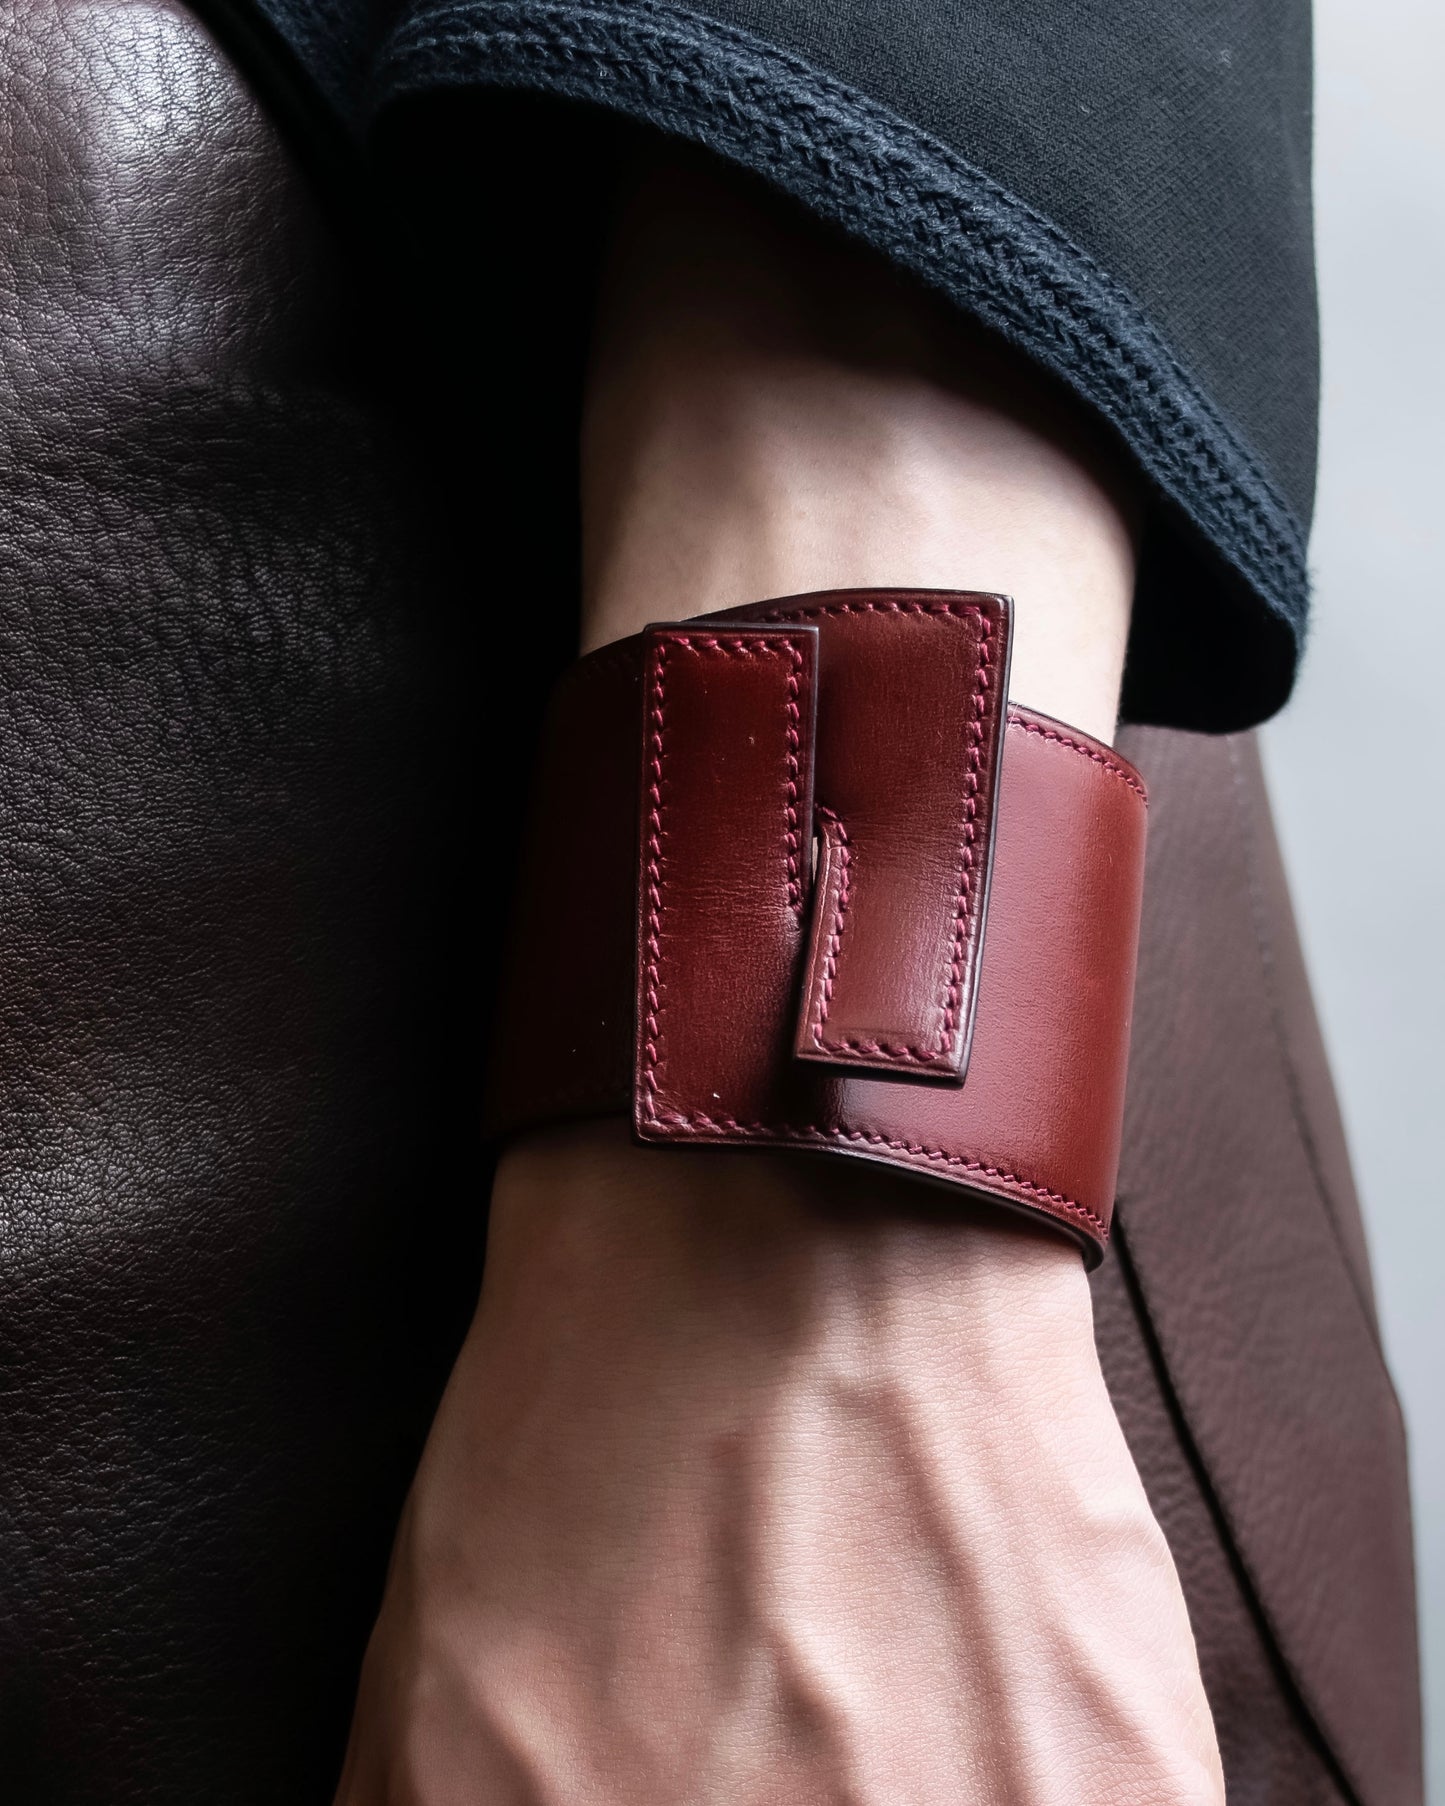 "Hermes" Leather interlocking bangle